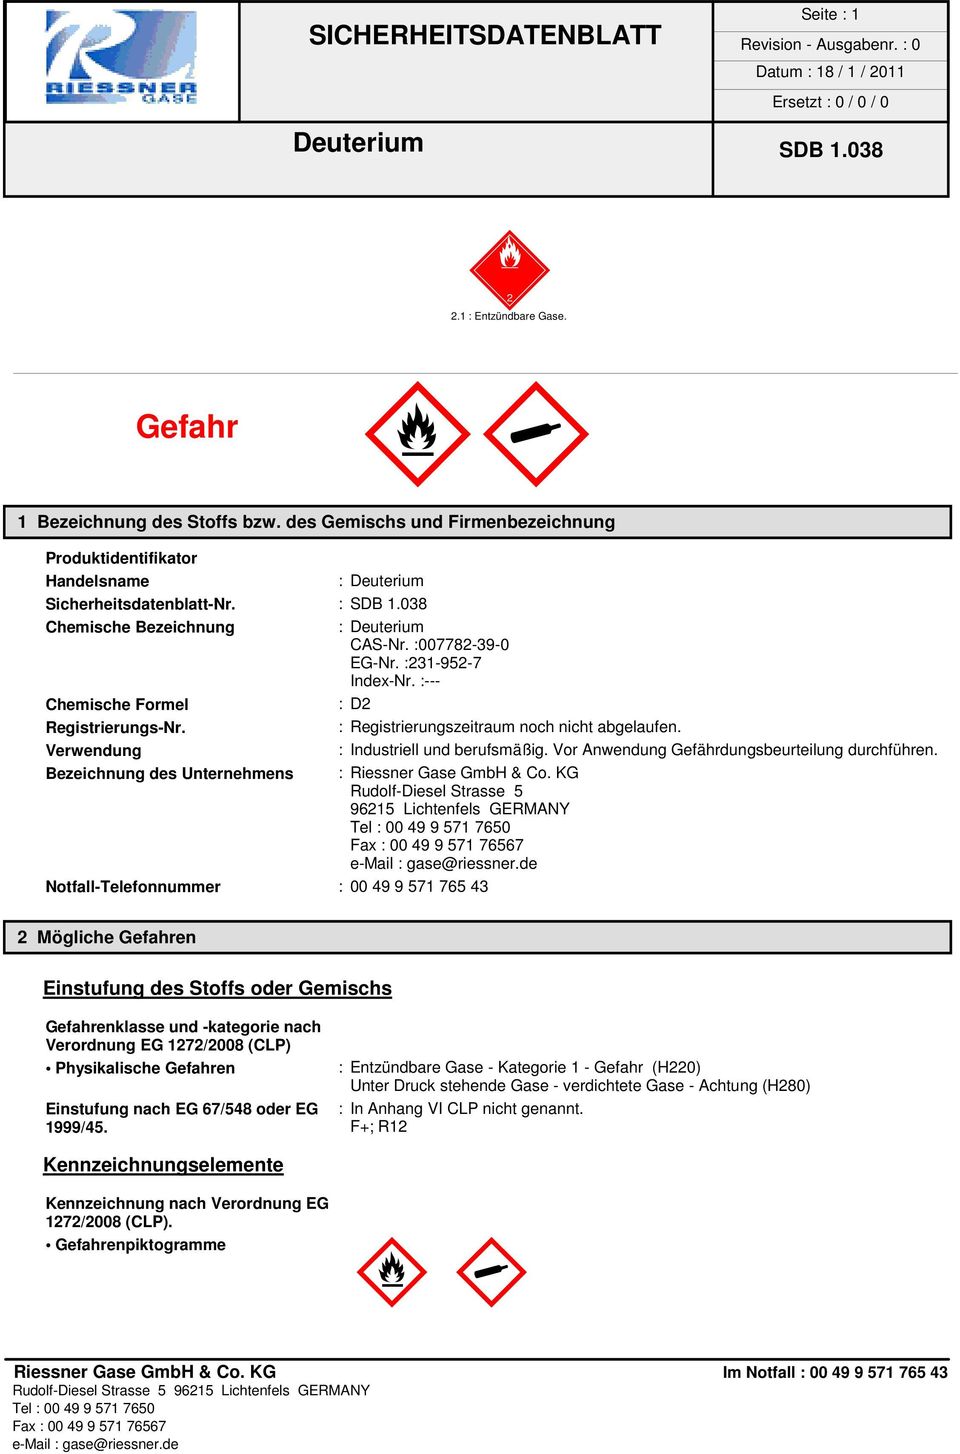 Verwendung : Industriell und berufsmäßig. Vor Anwendung Gefährdungsbeurteilung durchführen. Bezeichnung des Unternehmens : Riessner Gase GmbH & Co.